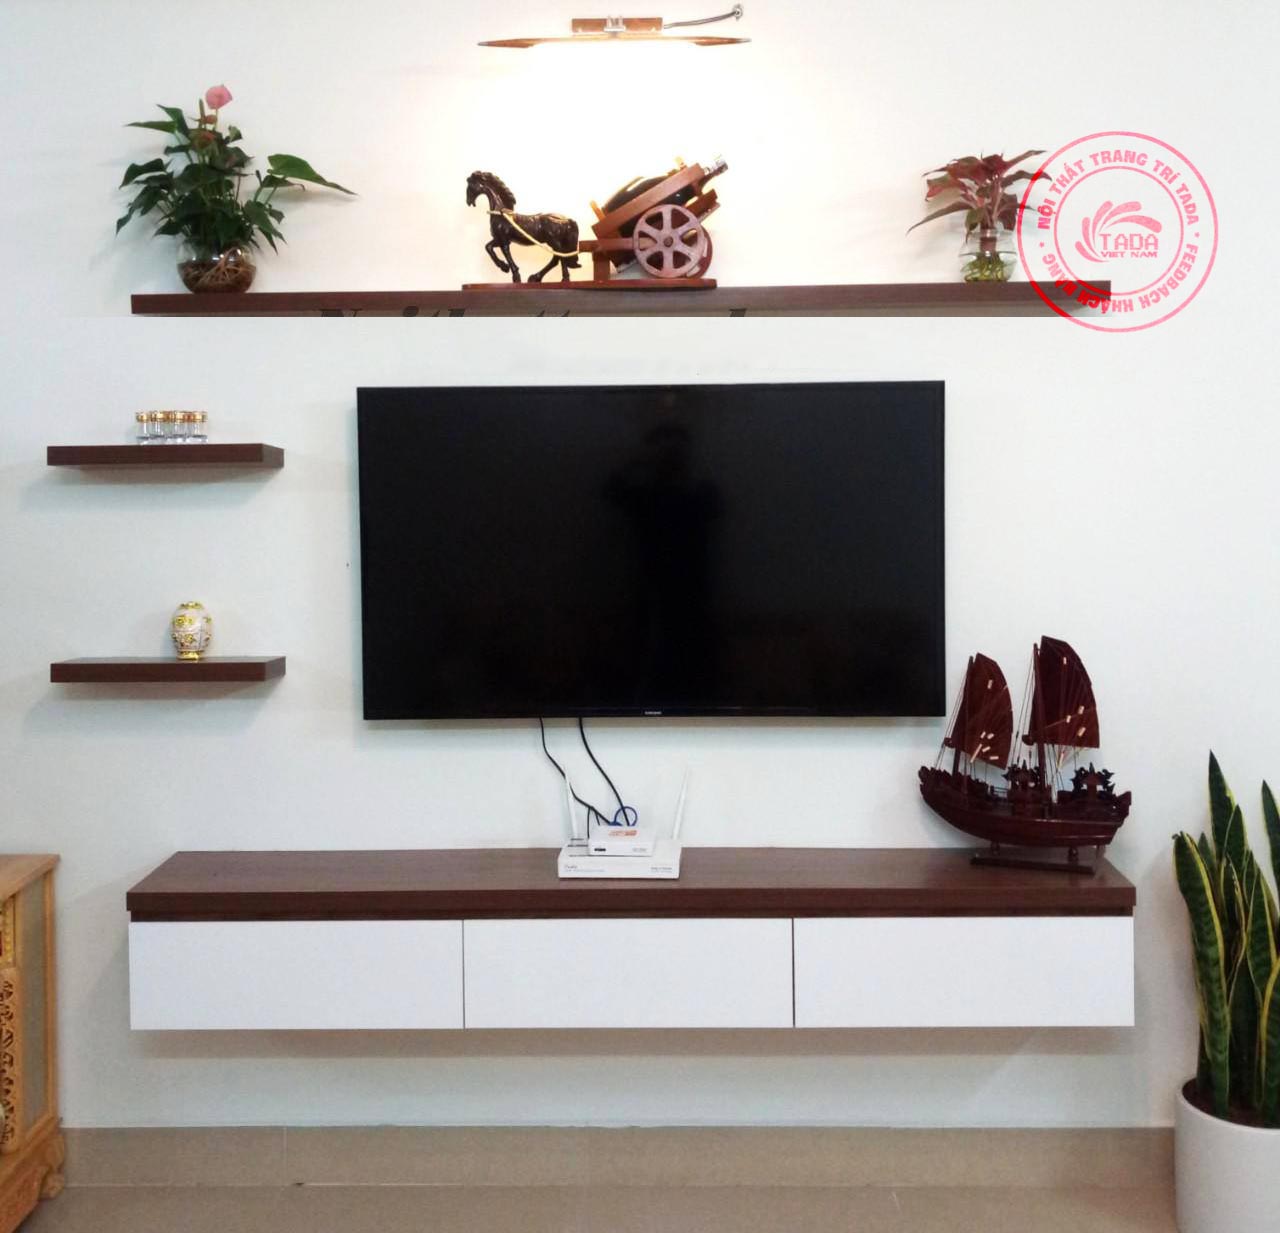 Nếu bạn đang tìm kiếm một giải pháp hiệu quả cho phòng khách nhỏ của mình, thì kệ TV treo tường sẽ là lựa chọn hoàn hảo! Với thiết kế linh hoạt và tiết kiệm không gian, bạn sẽ có một không gian sống rộng rãi hơn. Hãy xem hình ảnh liên quan đến kệ TV treo tường để có thêm những ý tưởng sáng tạo!